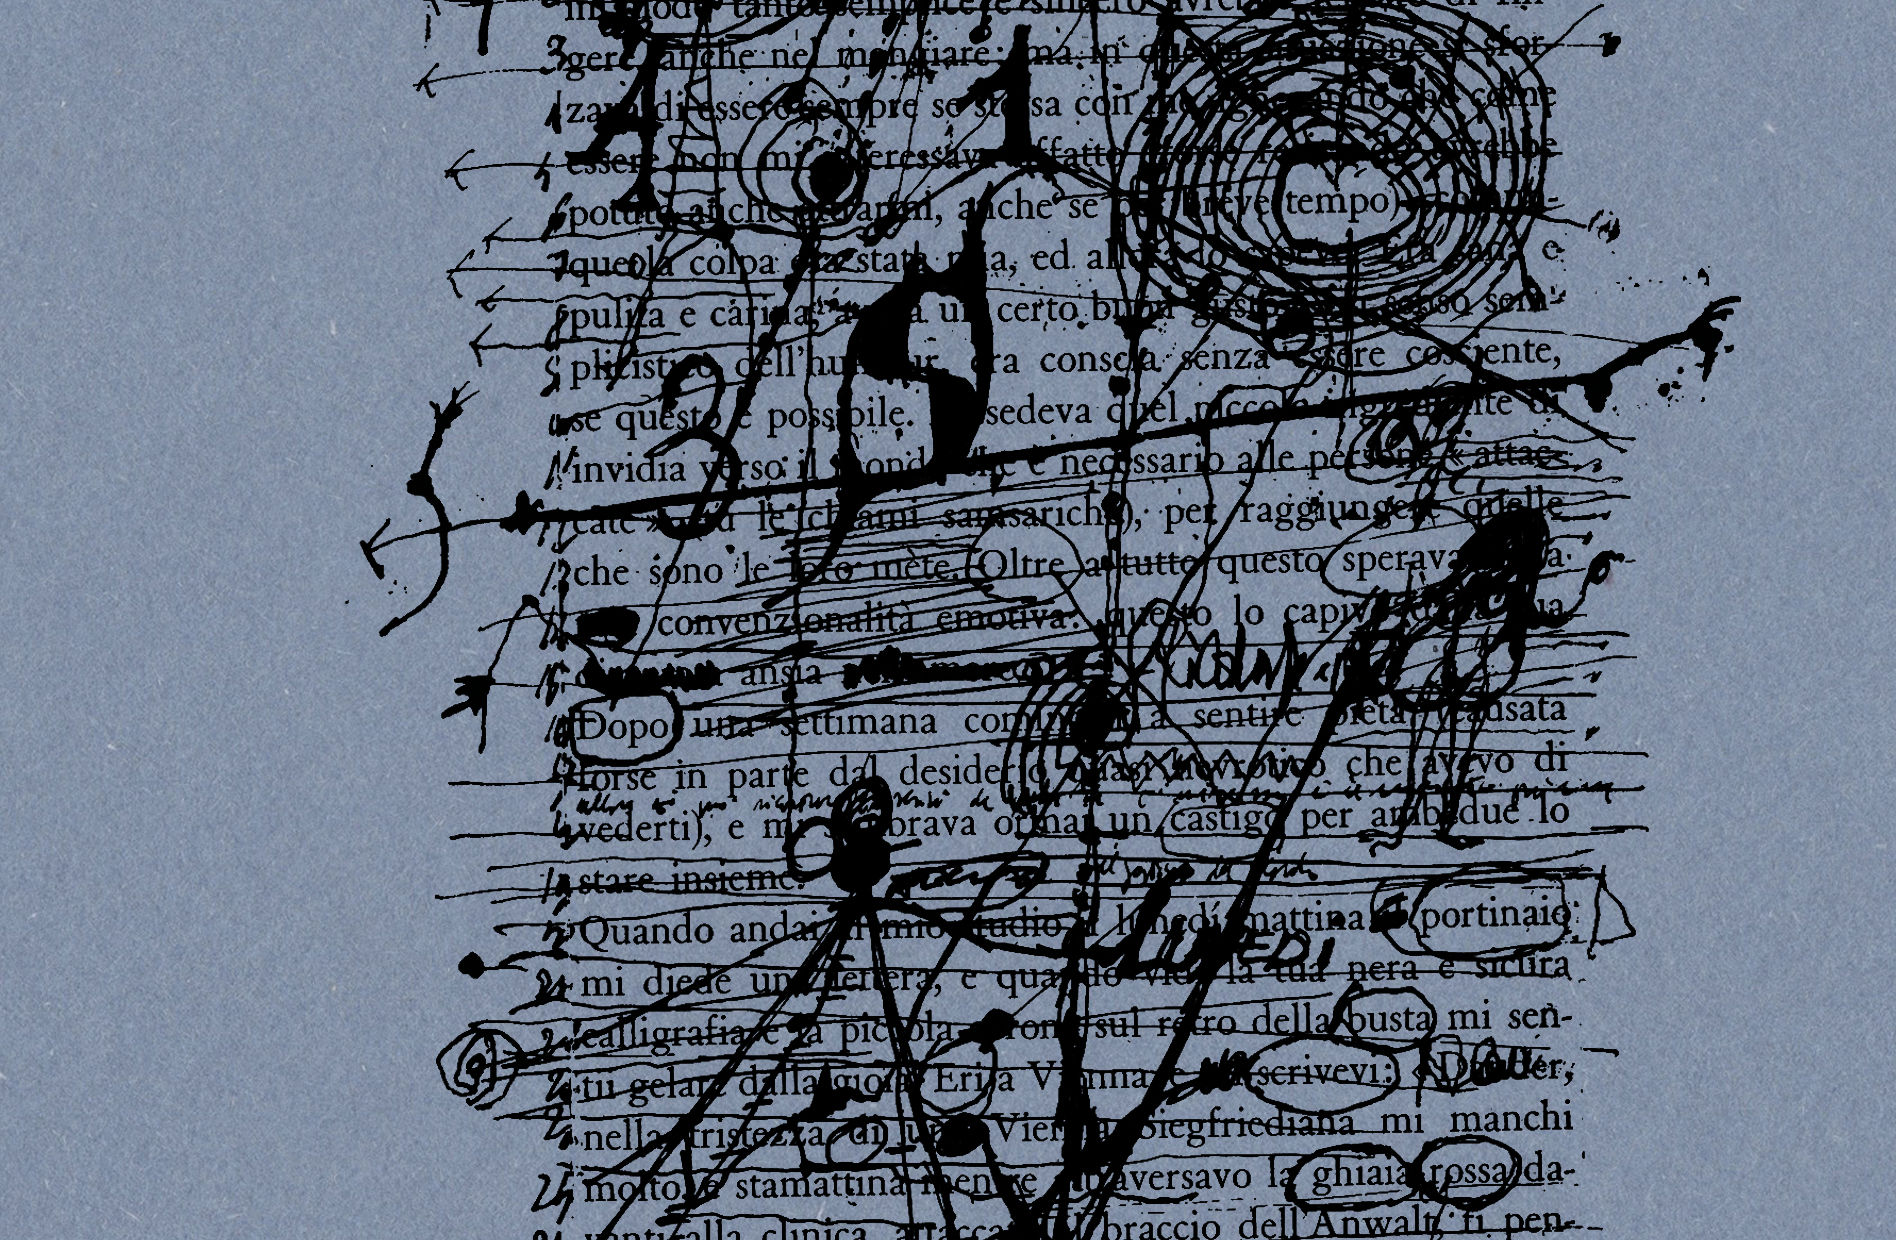 Un dettaglio dalla copertina di "La radice dell'inchiostro", a cura di Giorgiomaria Cornelio